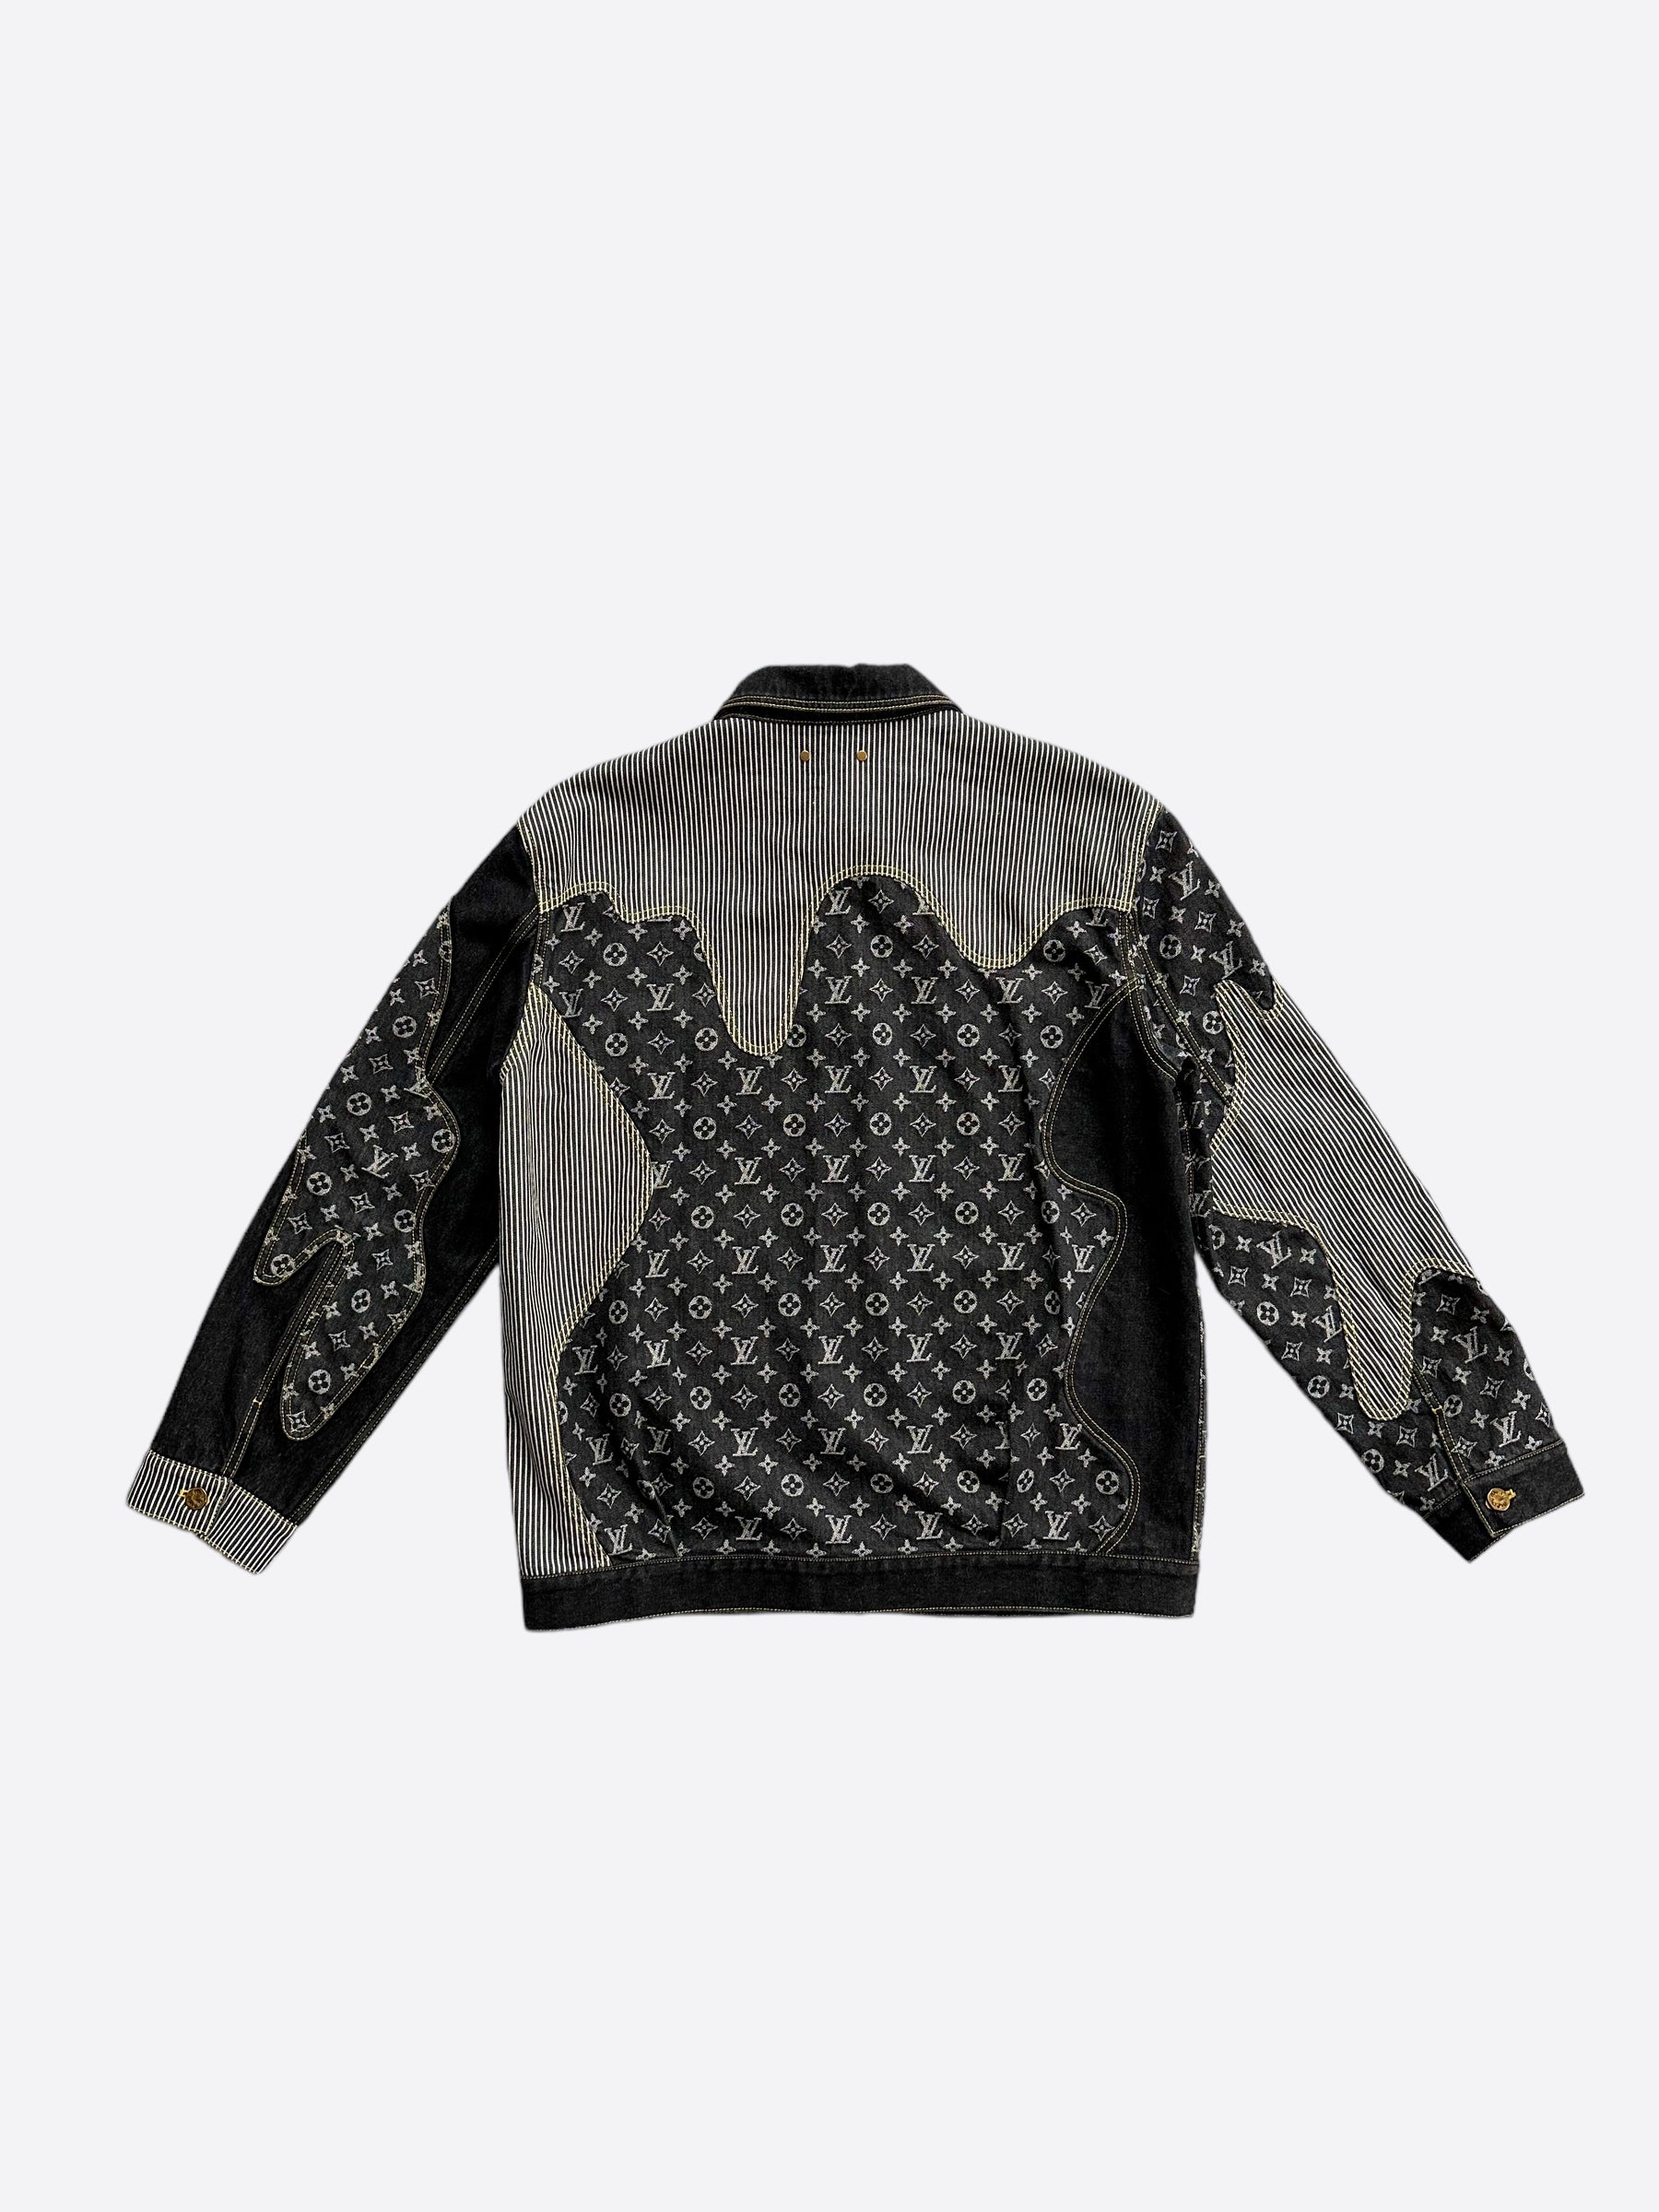 Louis Vuitton Monogram Printed Denim Jacket BLACK. Size 48